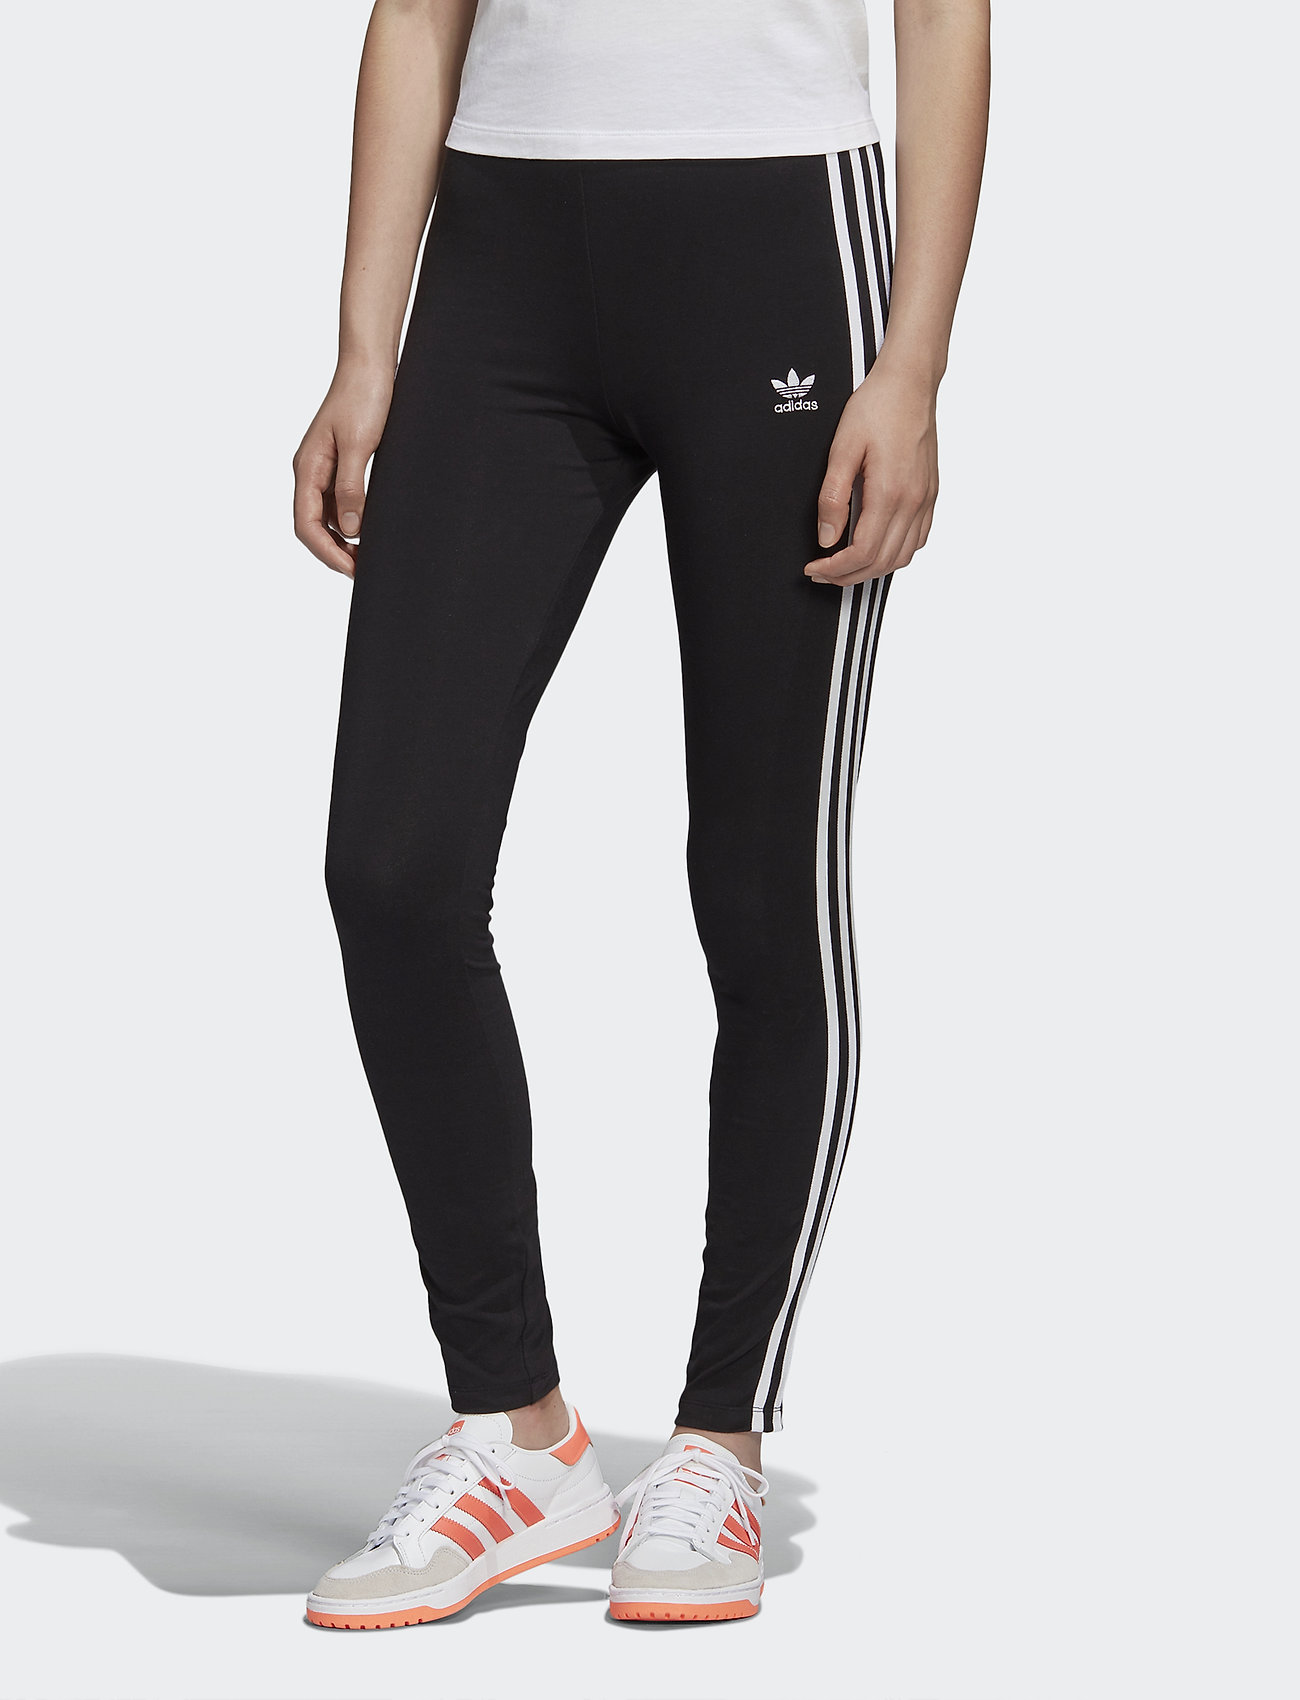 3 Str Tight (Black/white) (23.96 €) - adidas Originals - | Boozt.com